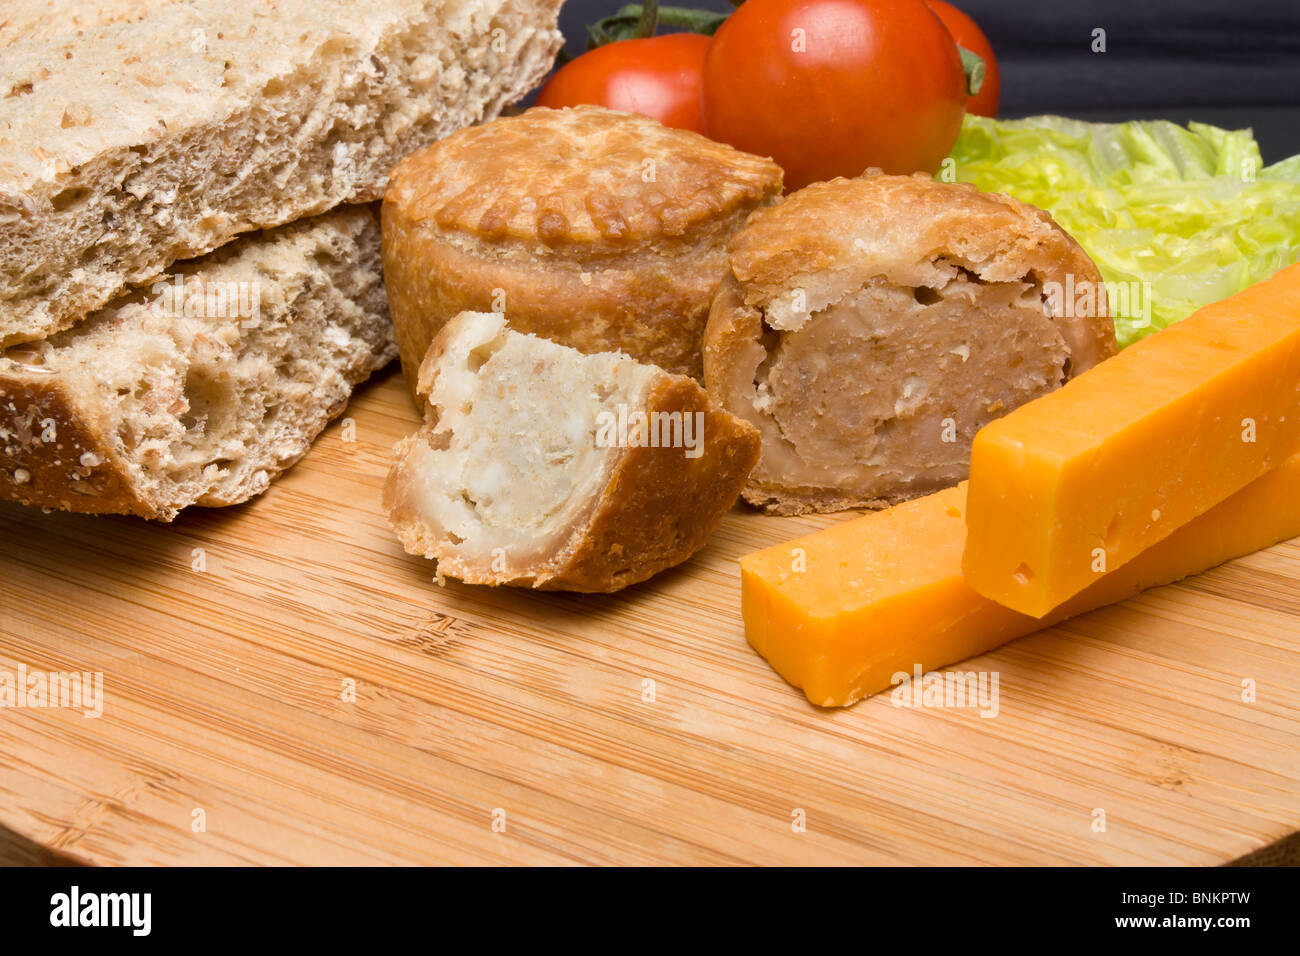 Traditionelle englische Ploughmans Lunch von Käse, Brot, Tomaten, Salat und Pork Pie auf hölzernen Platte. Stockfoto